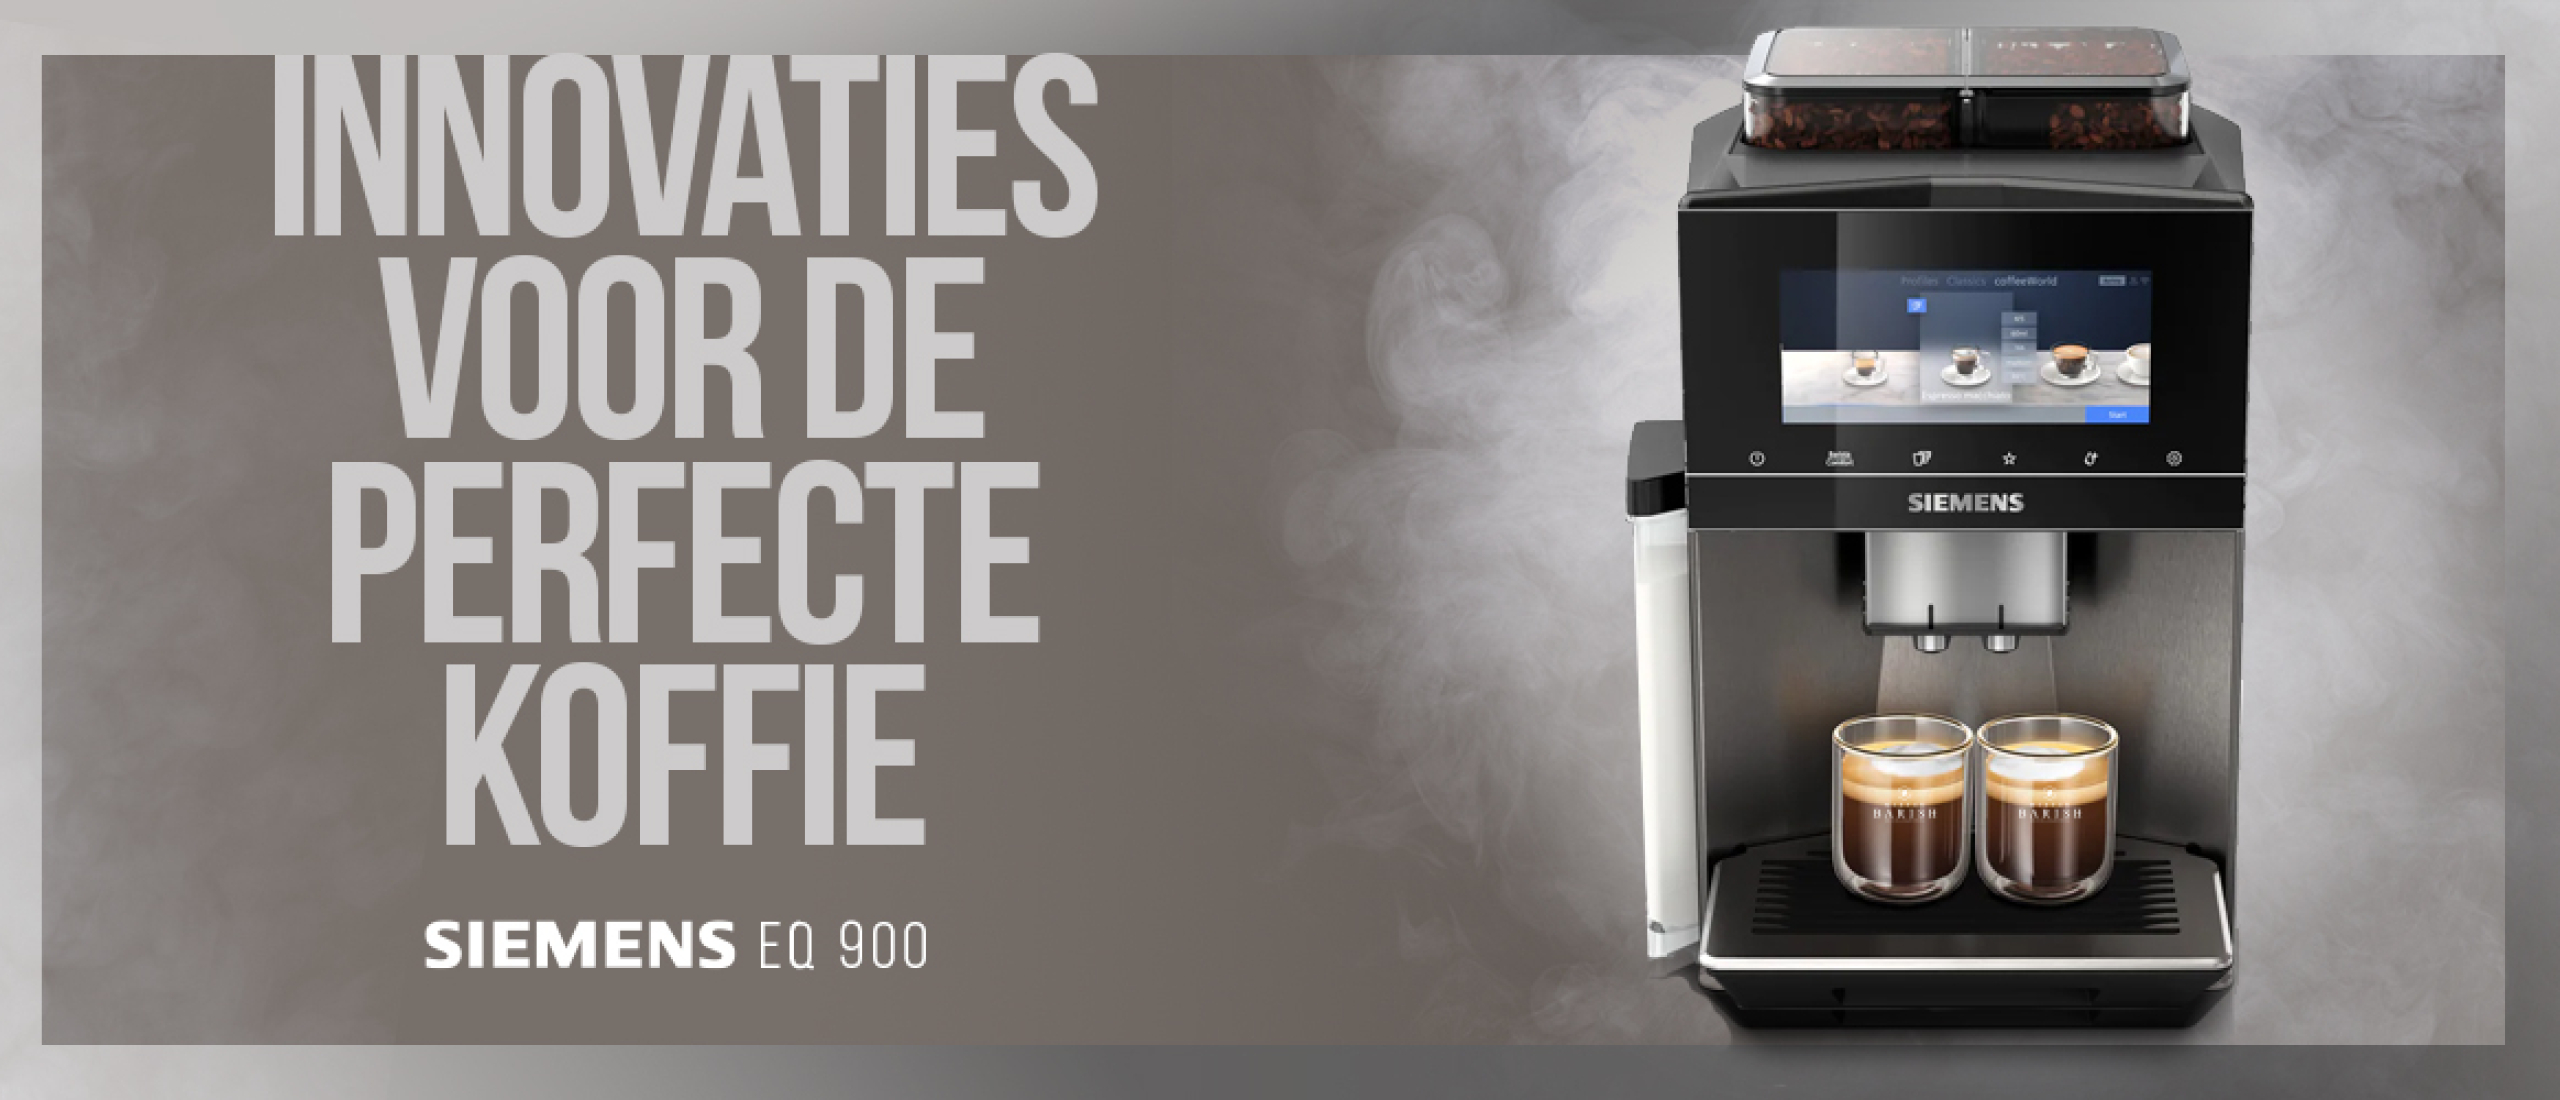 Siemens EQ.900: innovatieve volautomaten die jouw koffiebeleving naar een hoger niveau tillen